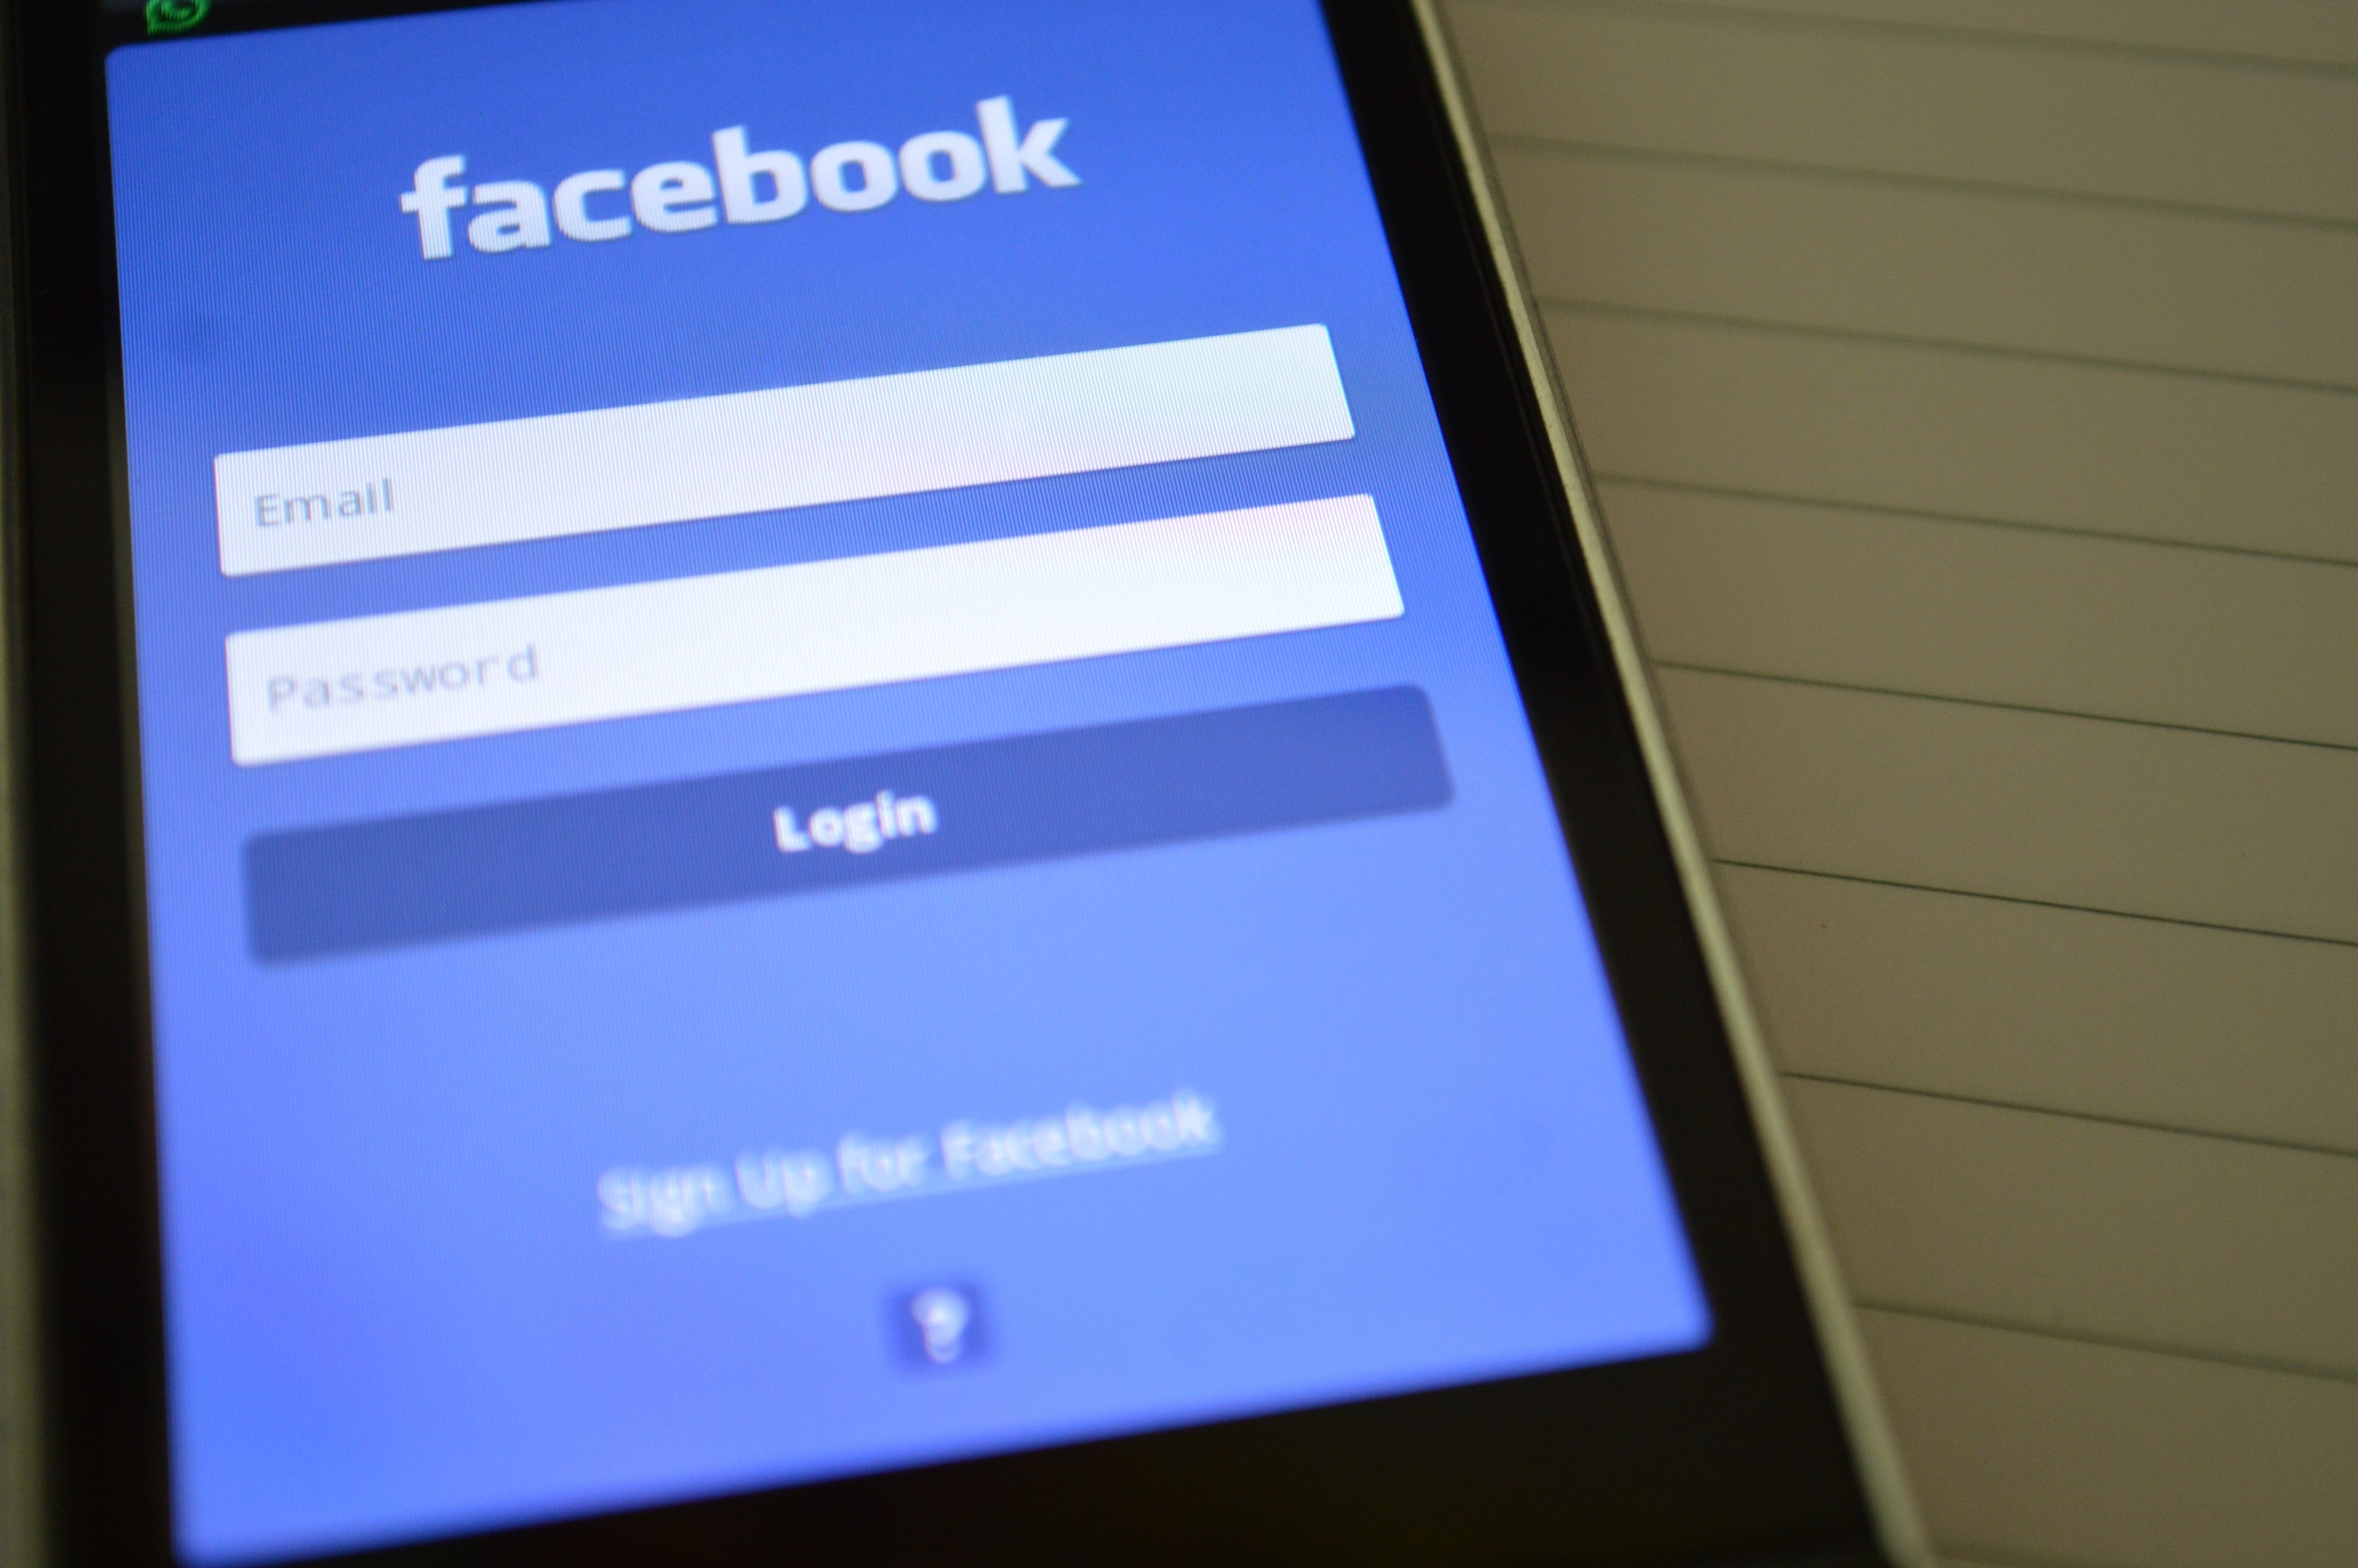 Verbeter Facebook niet, vervang het: de tijd is rijp voor een nieuw sociaal netwerk